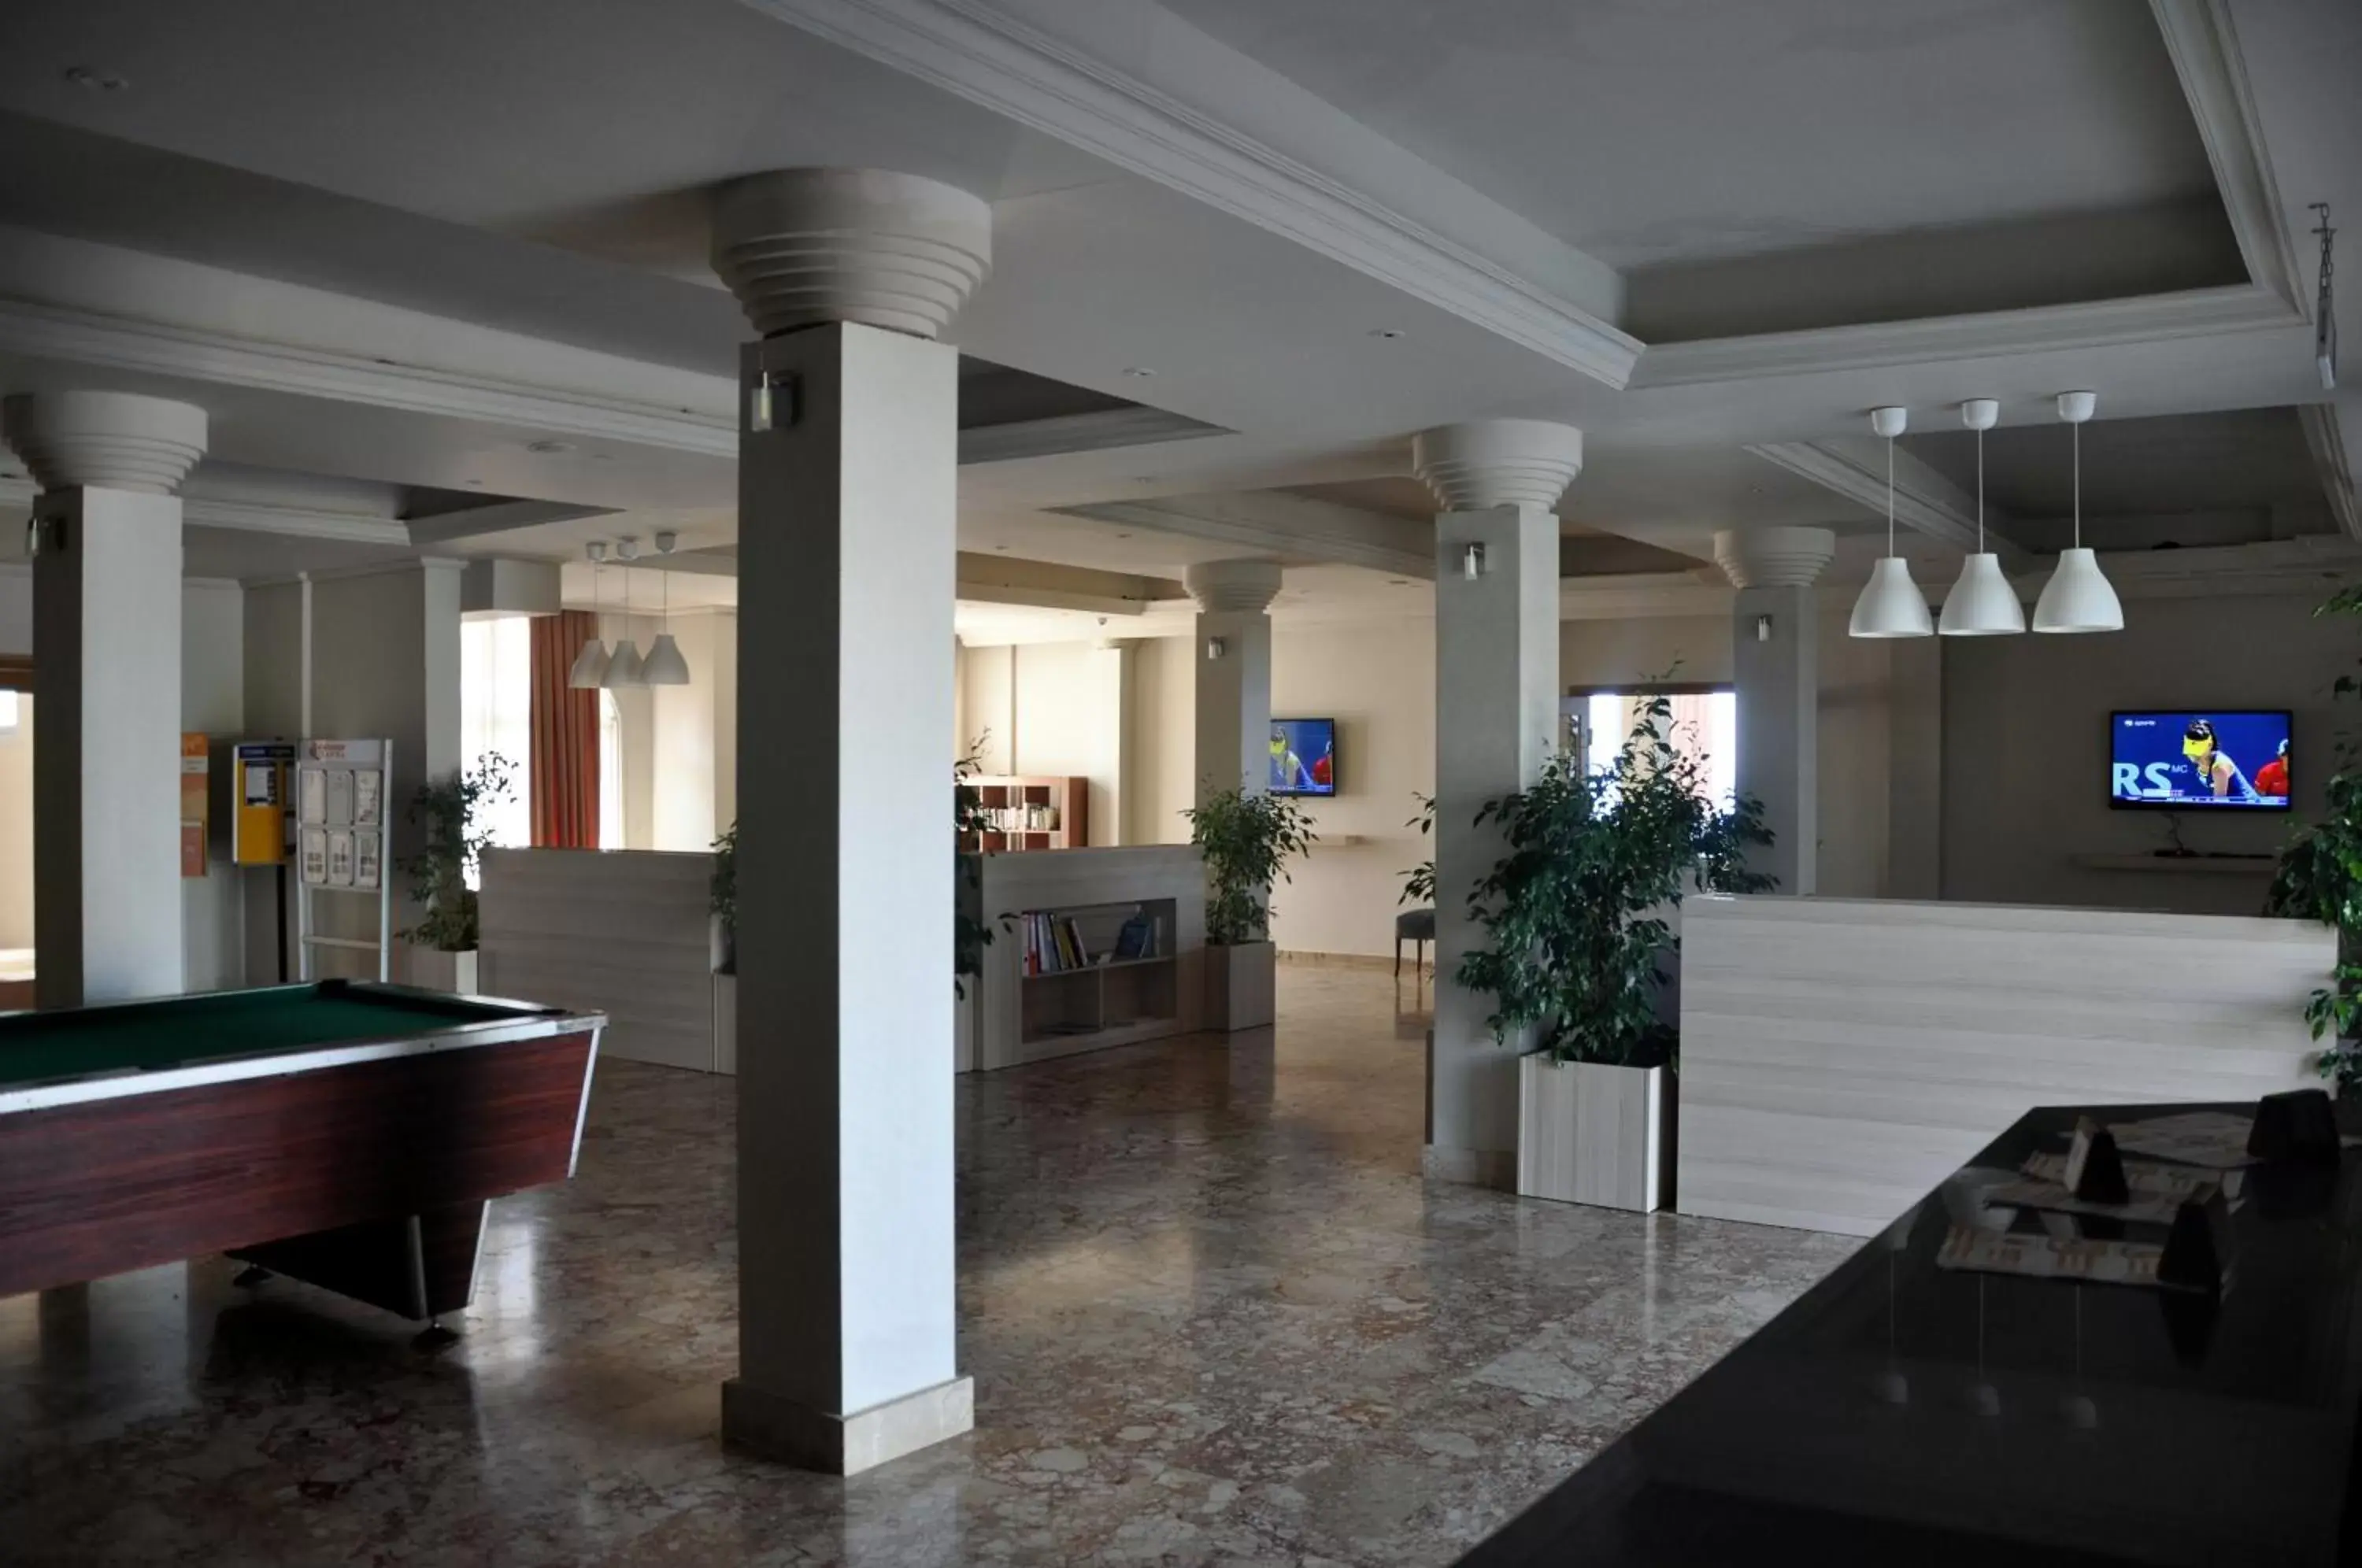 Lobby or reception in Manolya Hotel